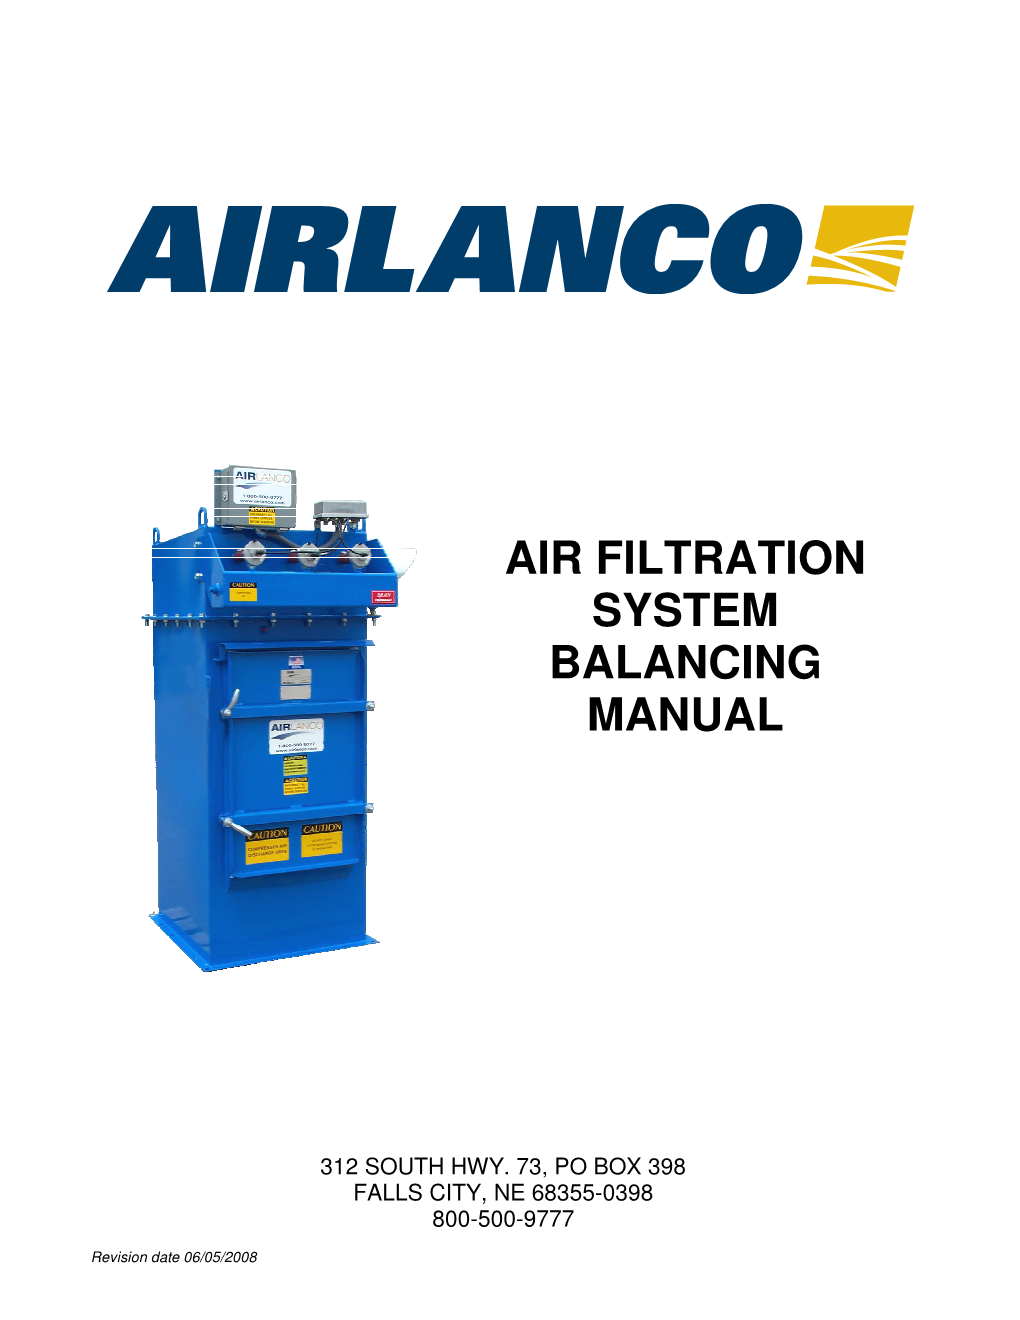 Air Filtration System Balancing Manual